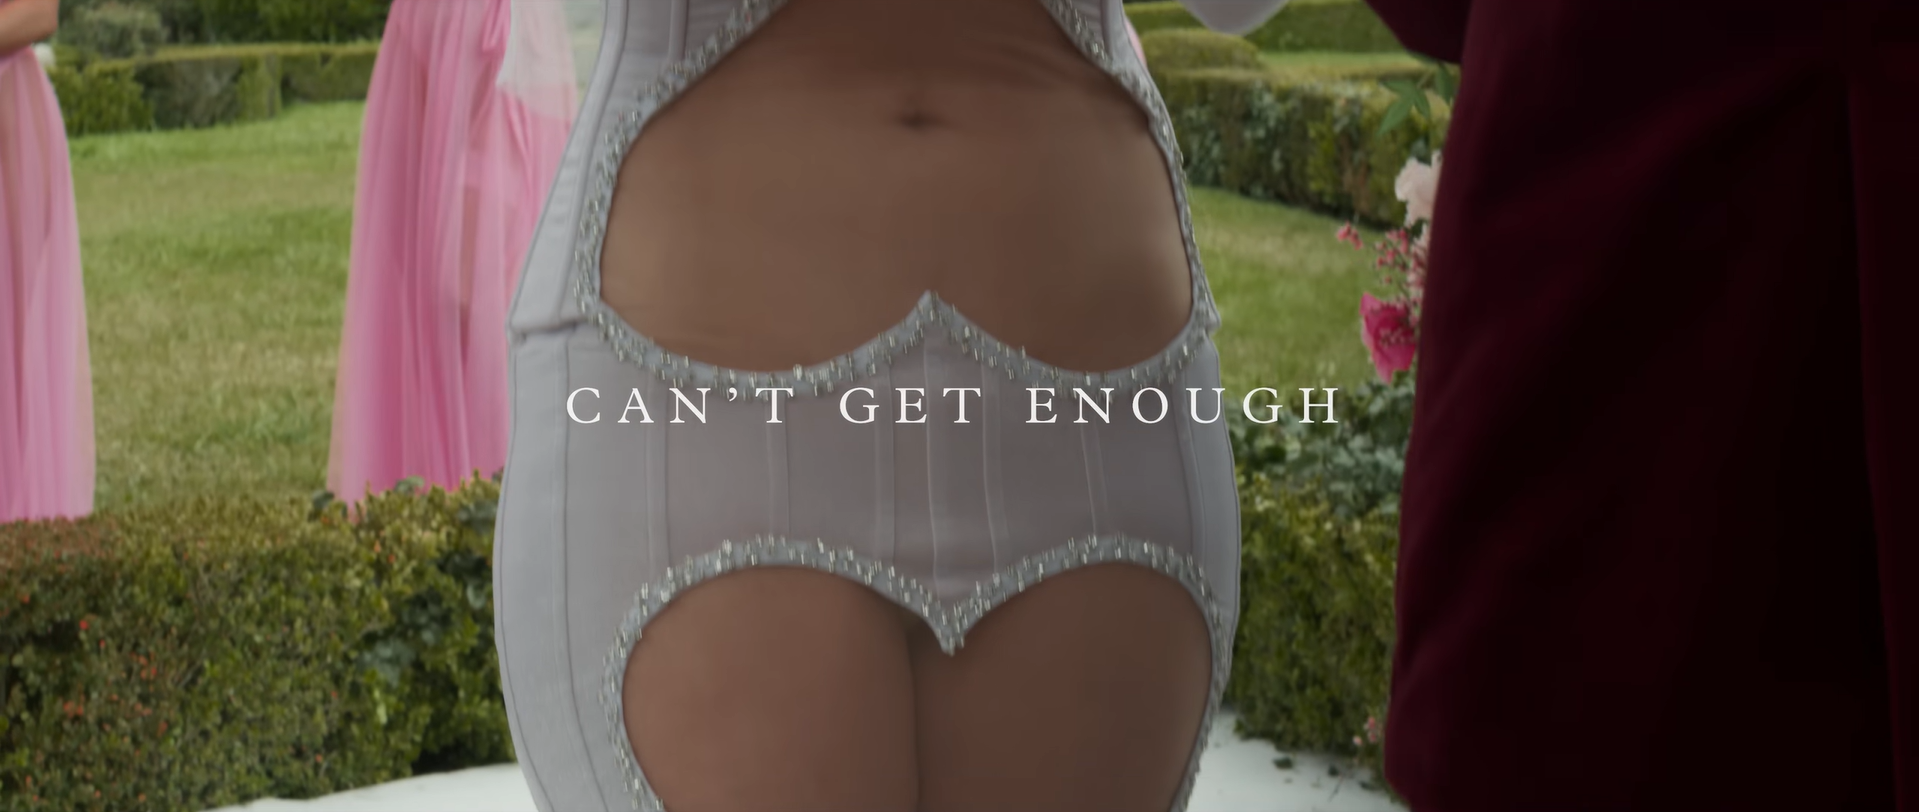 Дженнифер Лопес представила новый клип Can't Get Enough в платье от украинского дизайнера Ивана Фролова